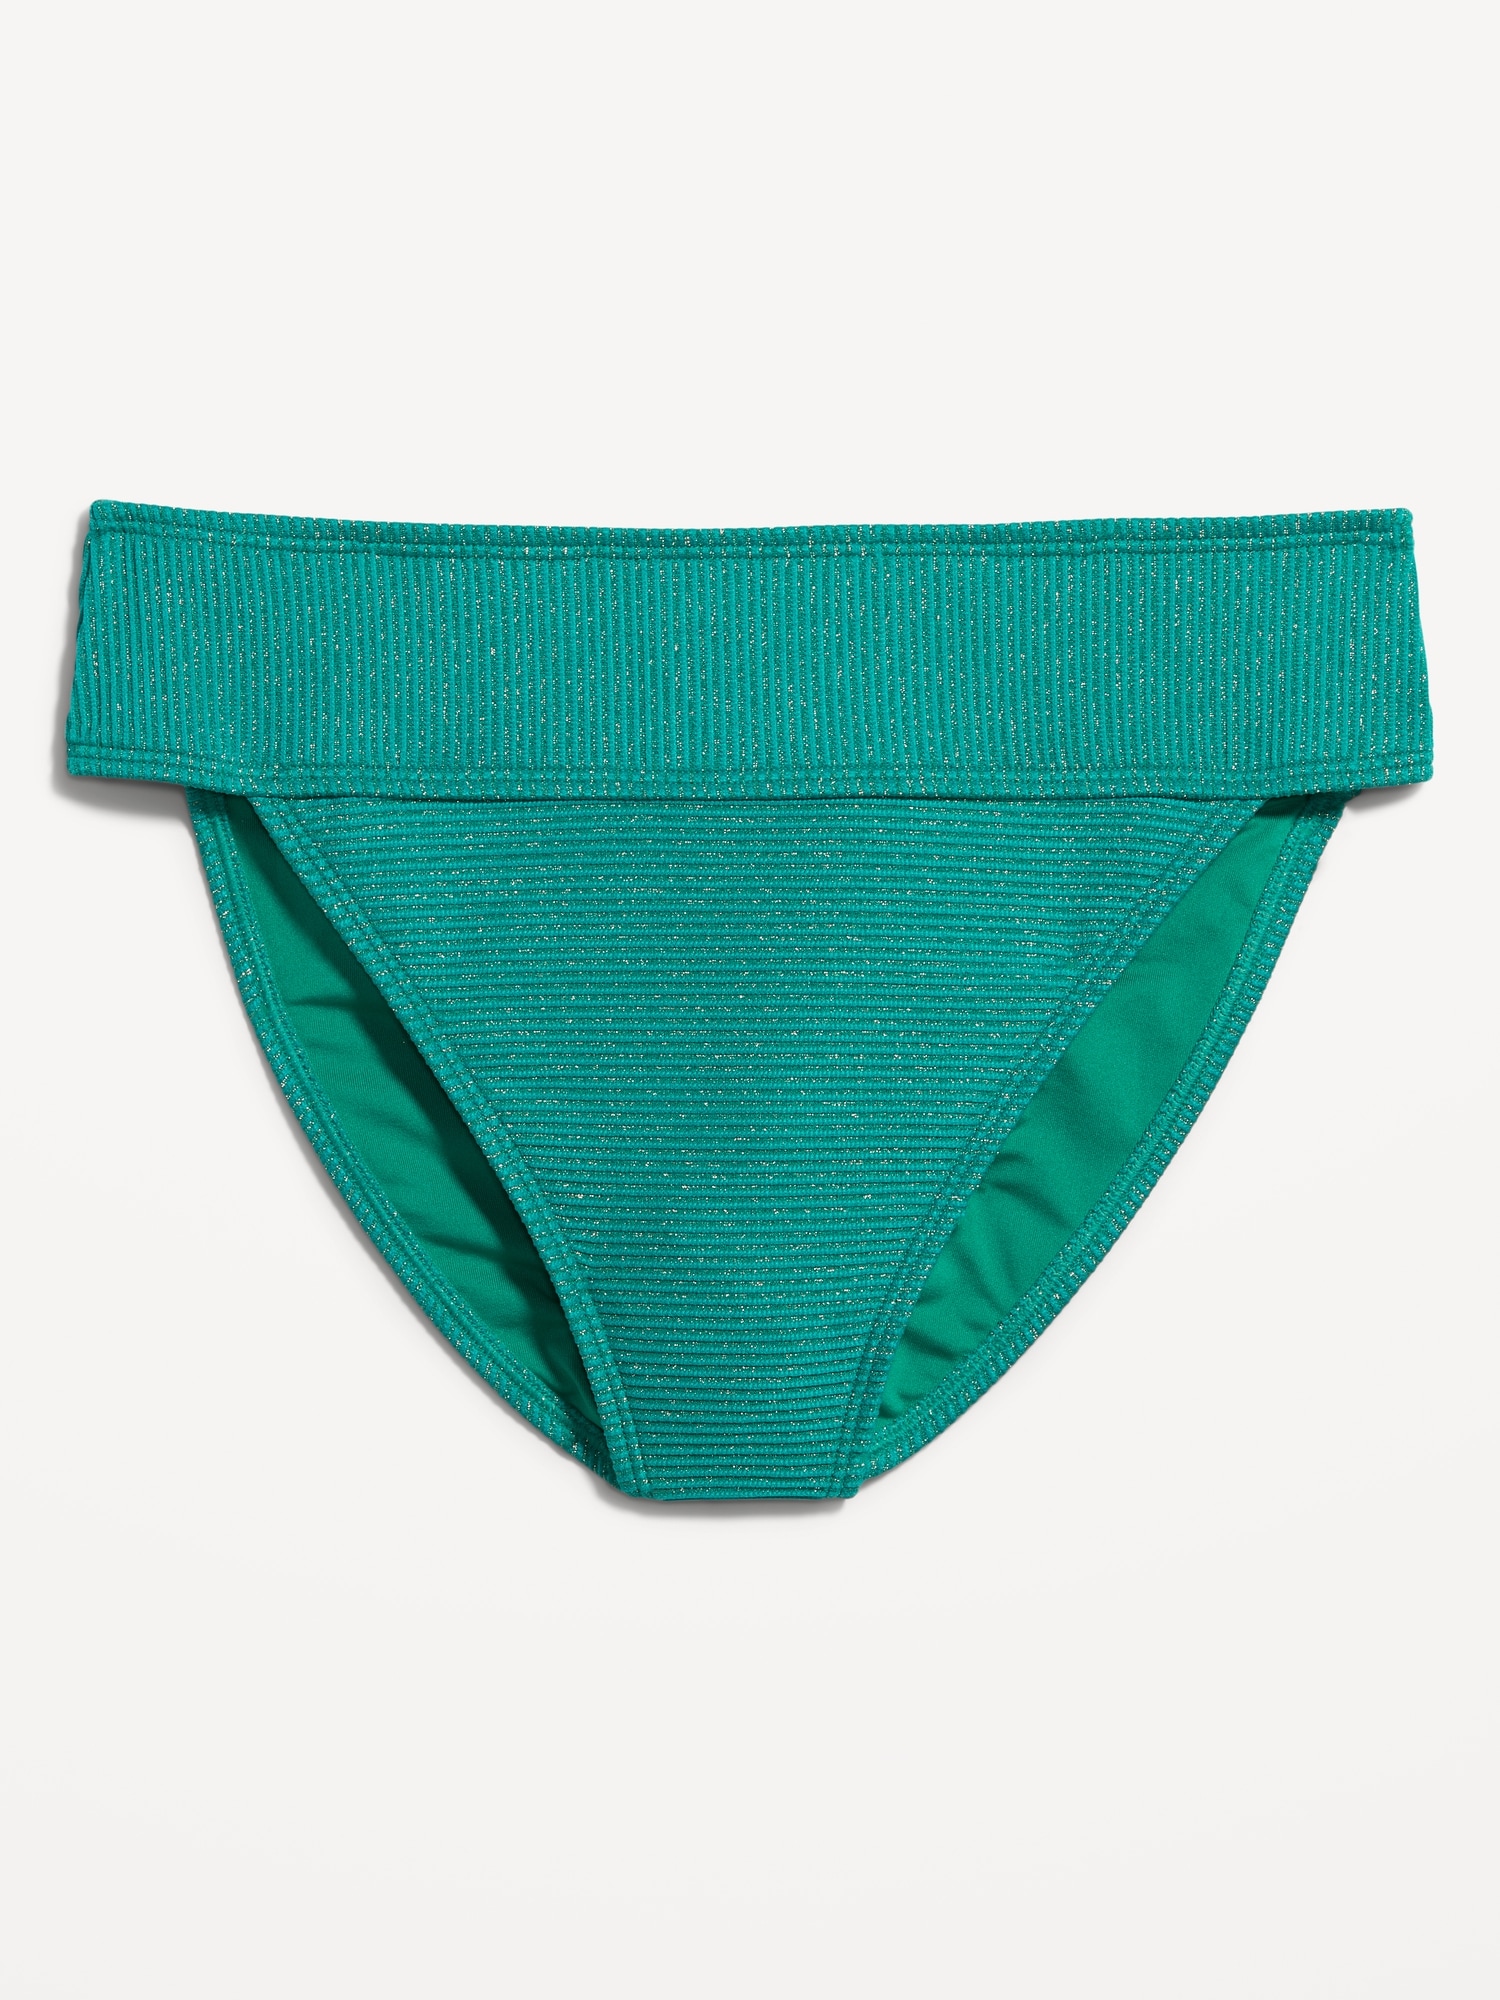 Old Navy High-Waisted Metallic Shine Bikini Swim Bottoms green. 1